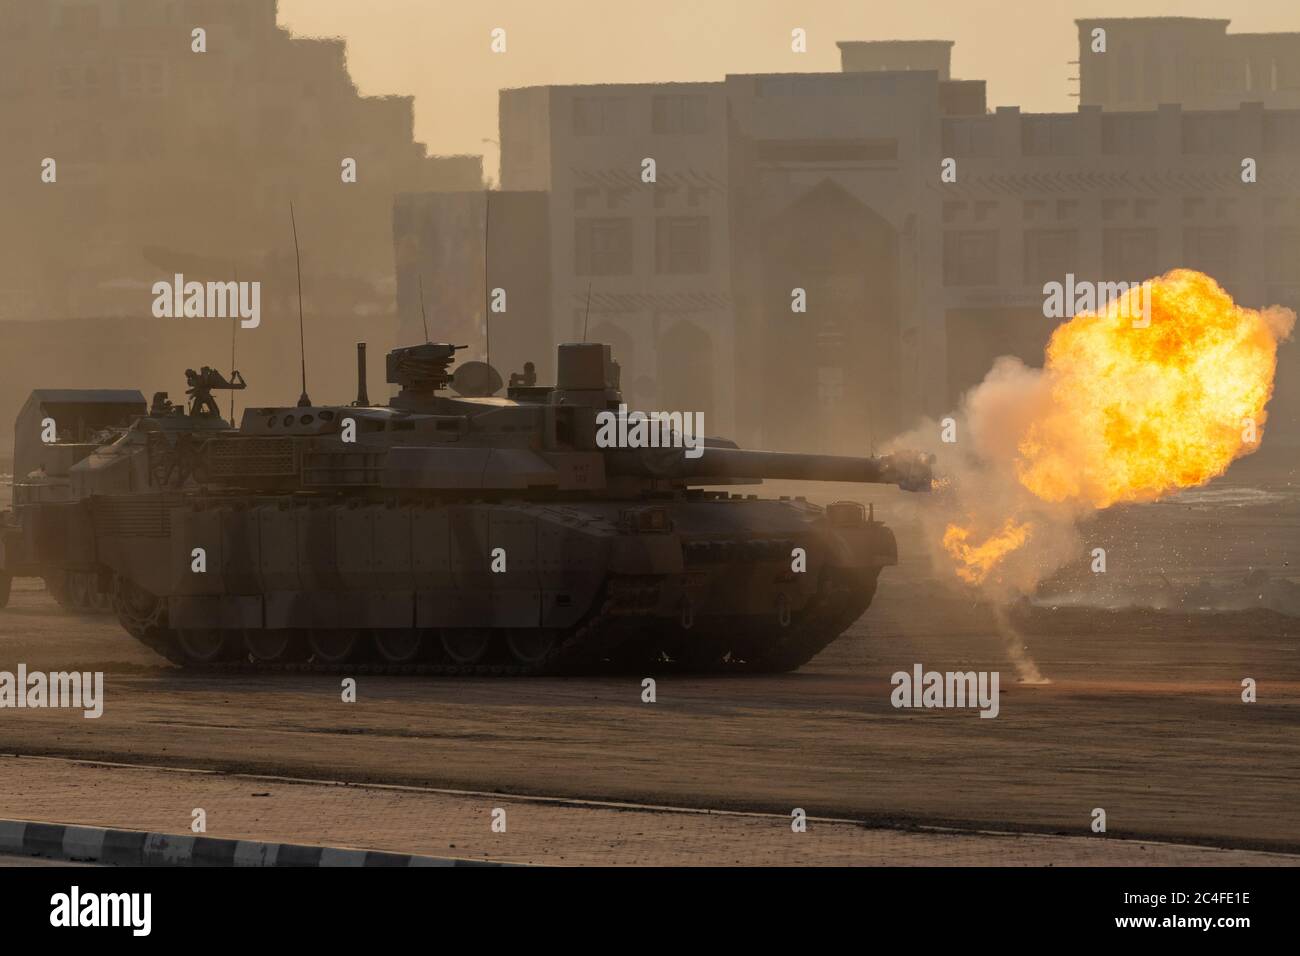 Militärische Explosion, Kämpfe, Krieg und Chaos. Tanks fahren durch den Rauch und Zerstörung. Militärisches Konzept. Stockfoto